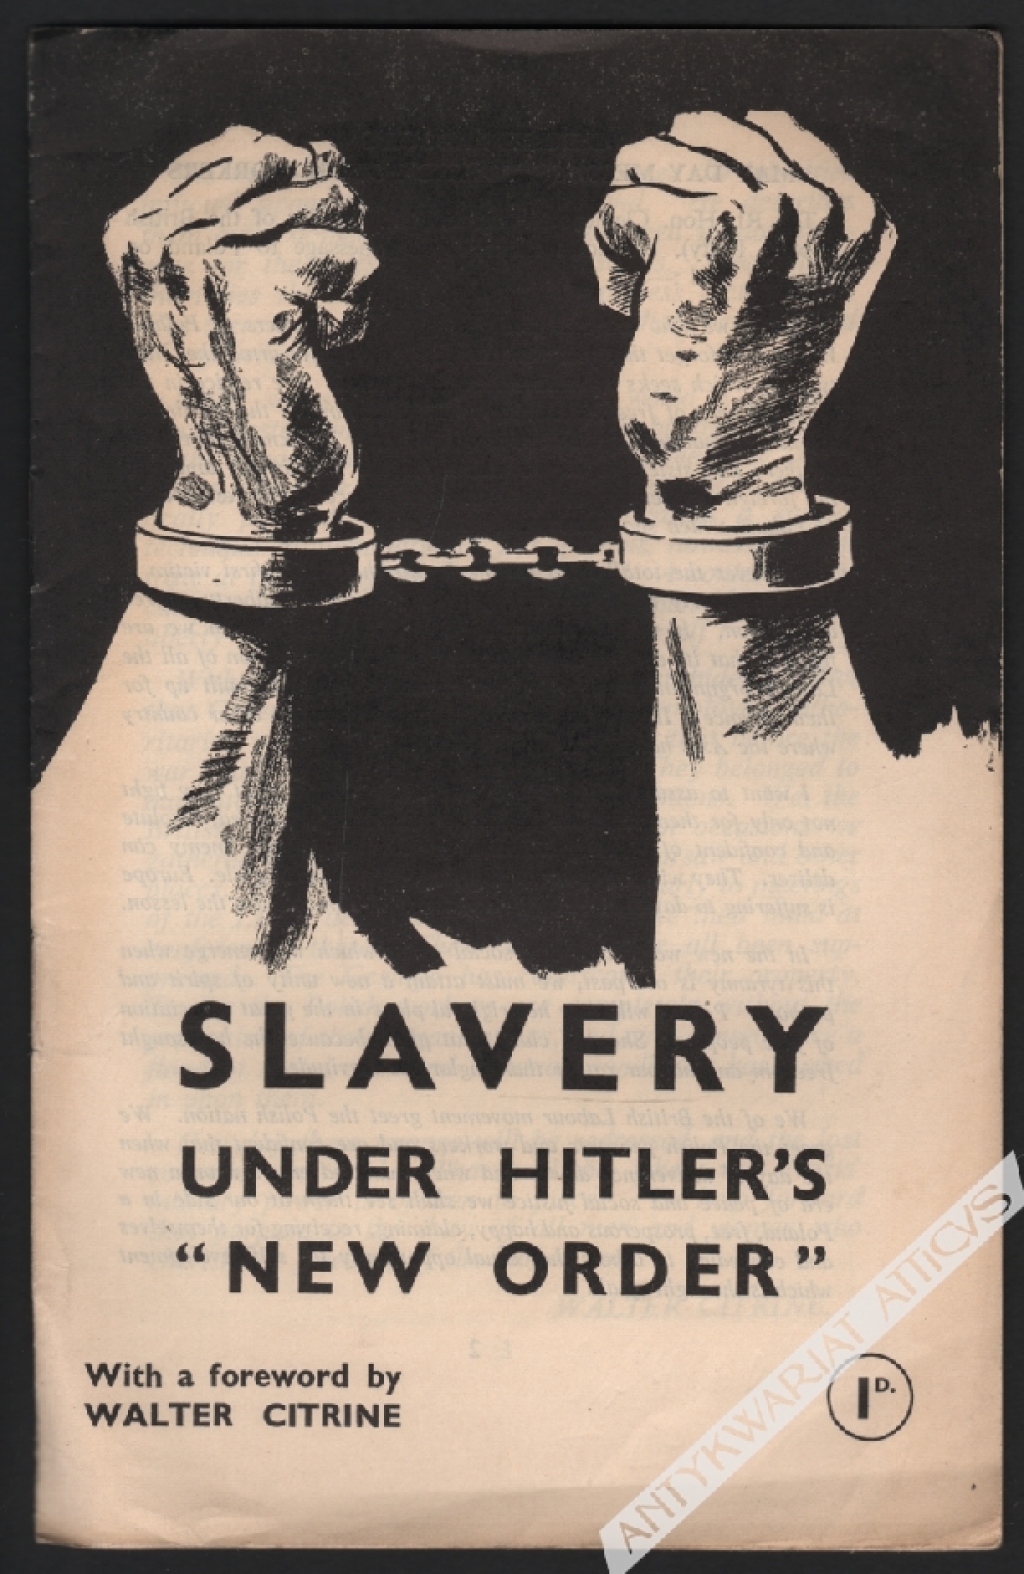 Slavery under Hitler's "new order"